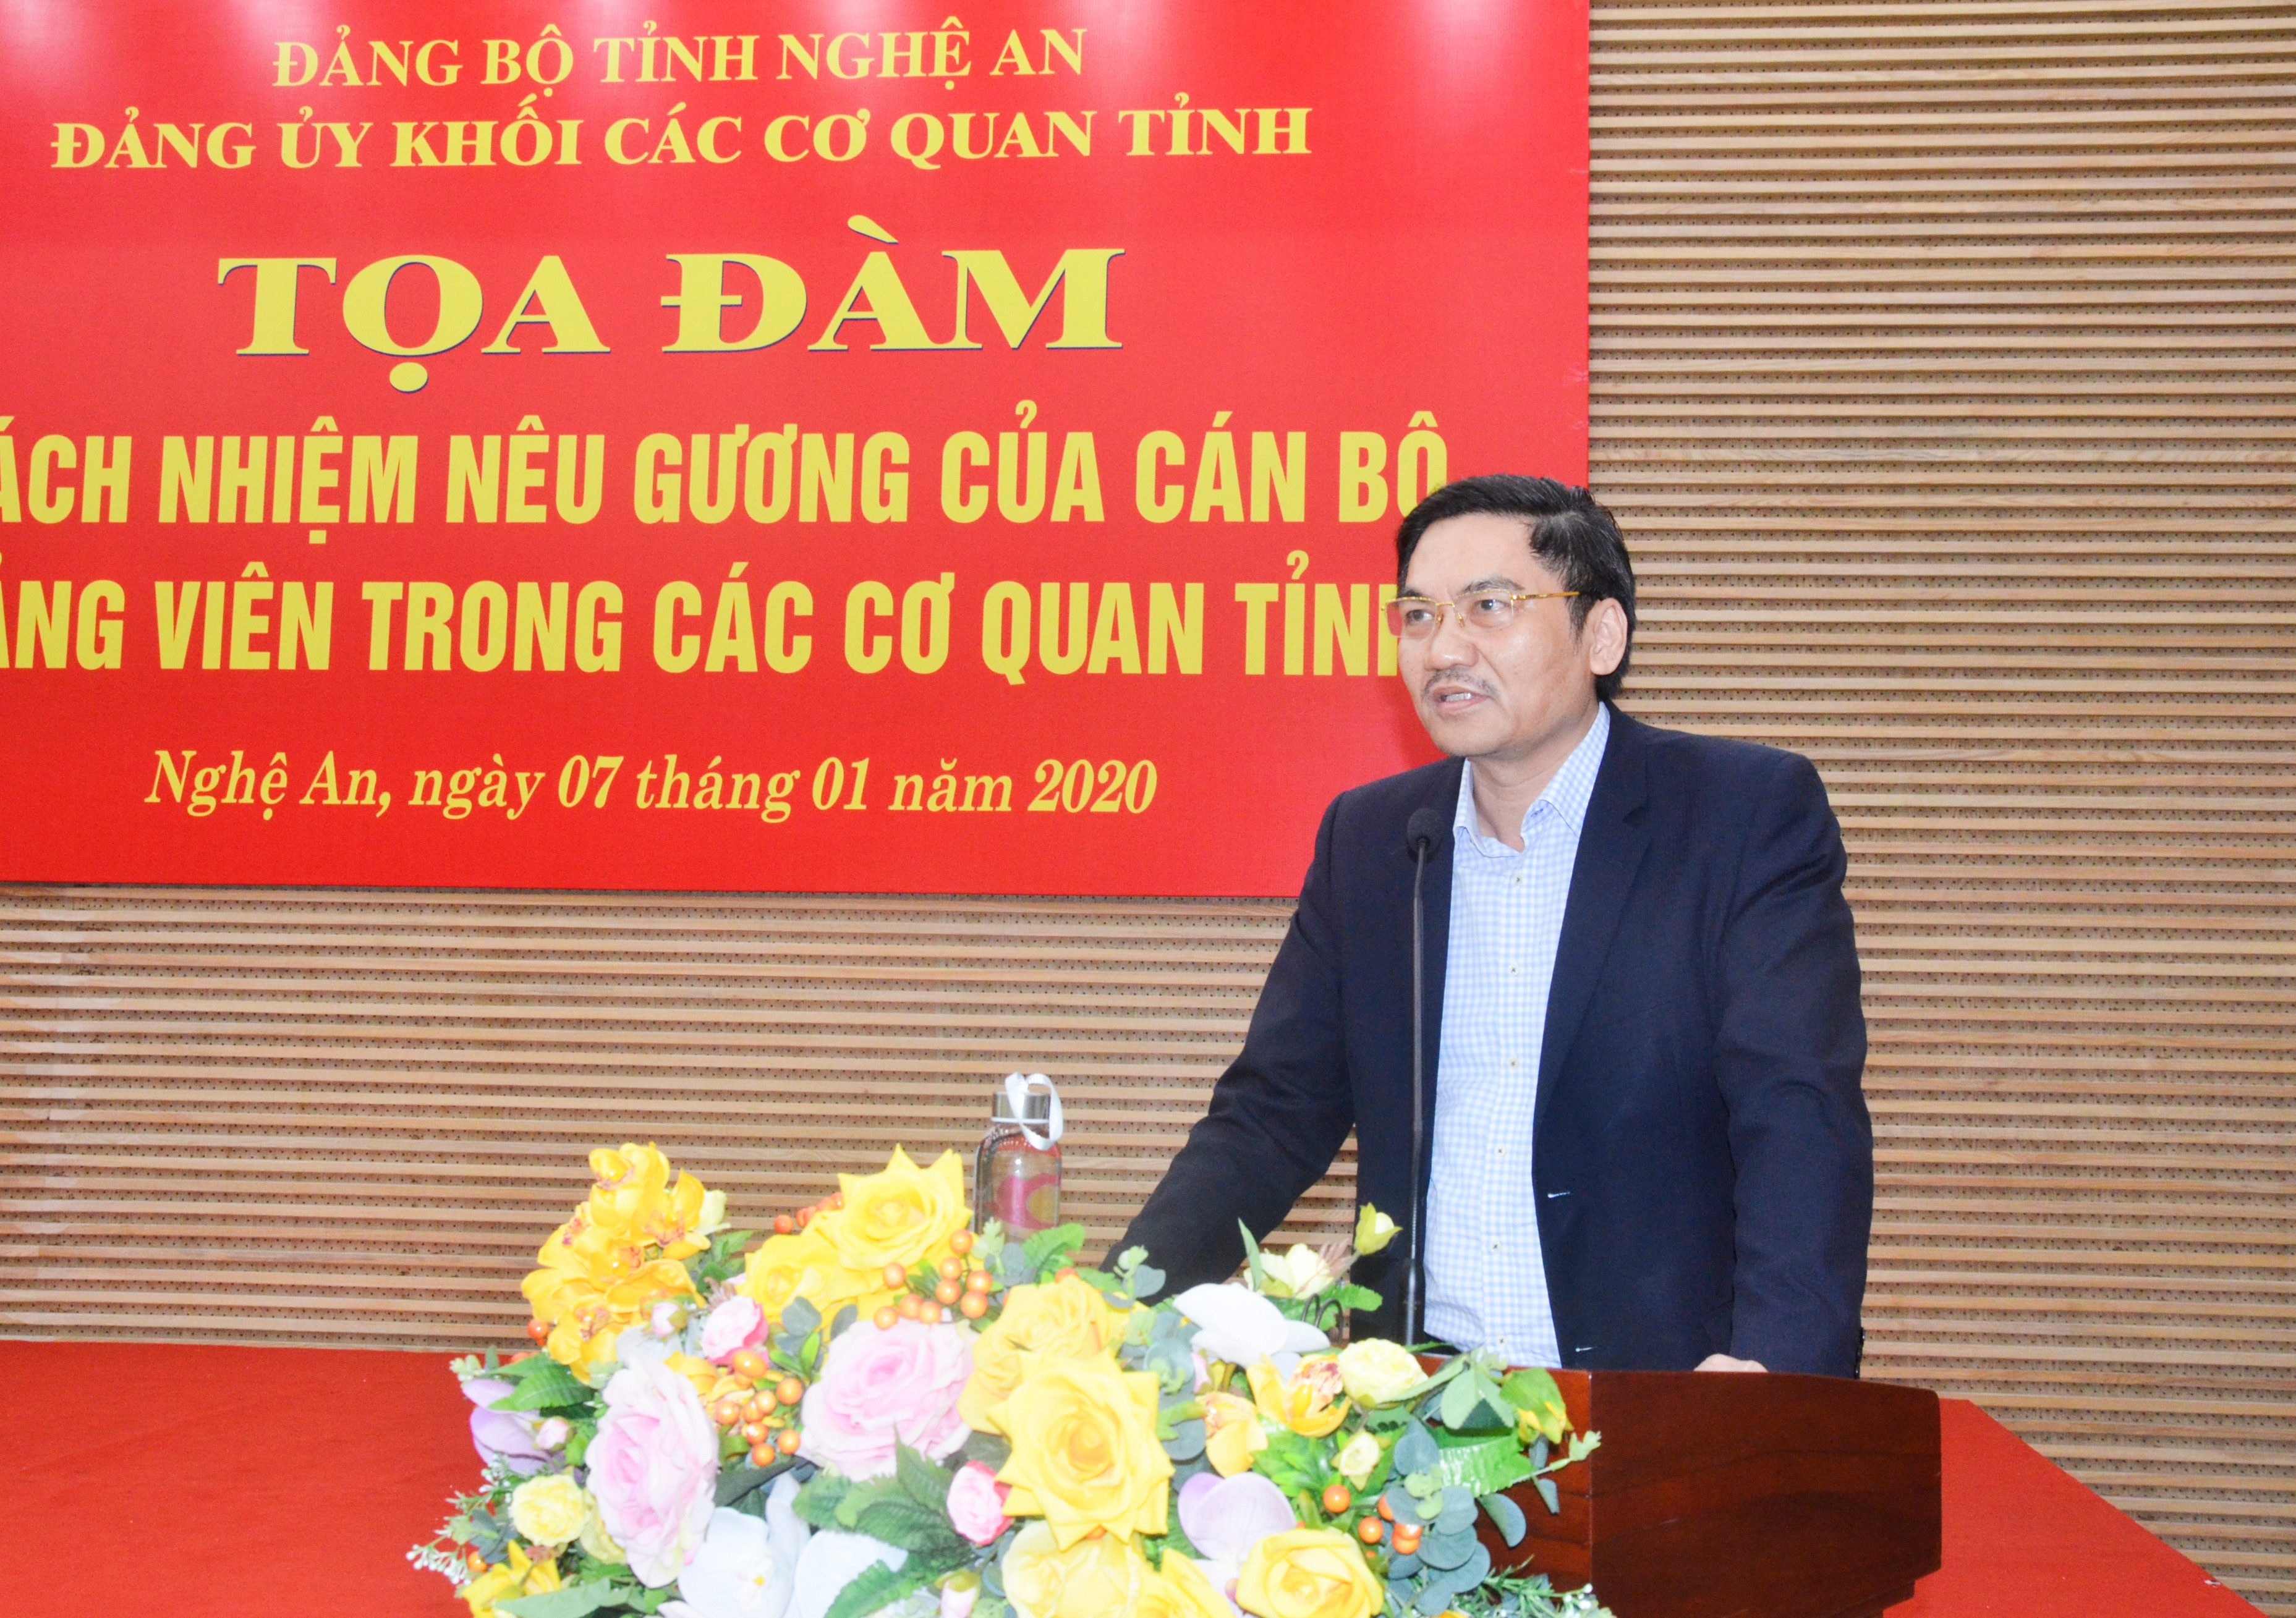 Phó Chủ tịch UBND tỉnh Hoàng Nghĩa Hiếu phát biểu tại hội nghị. Ảnh: Thanh Lê